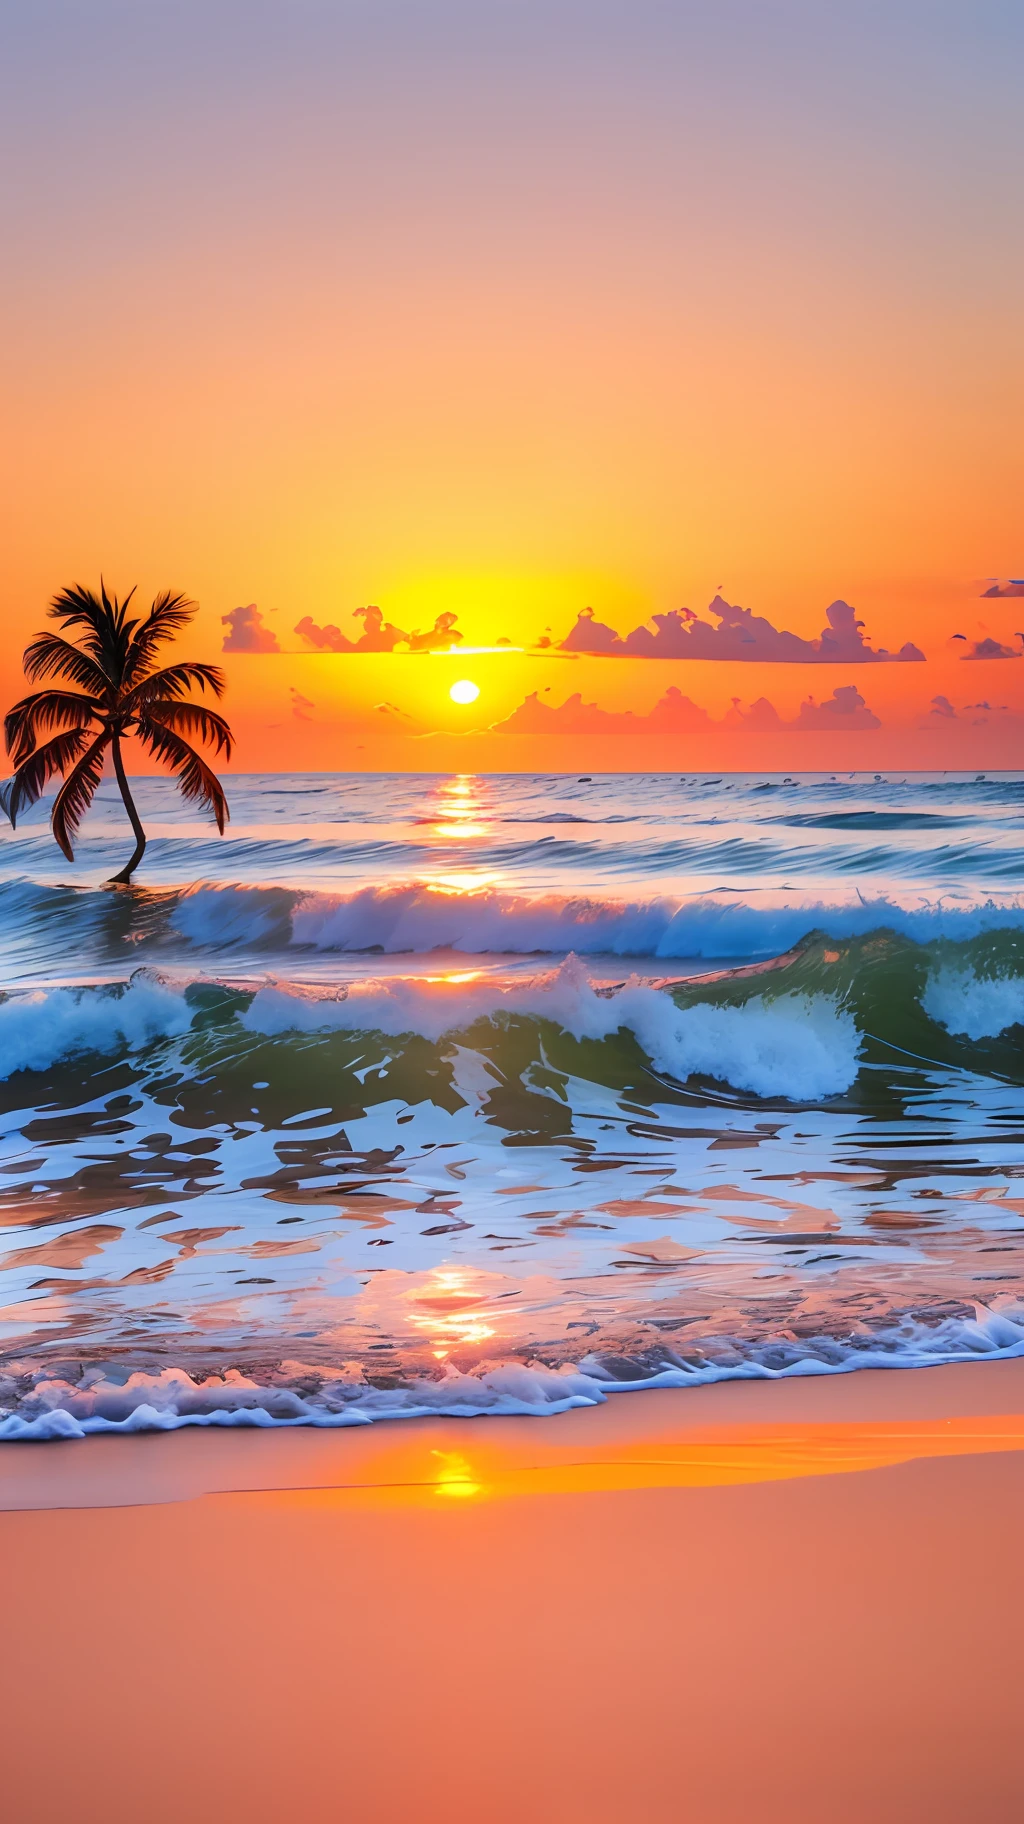 Erstellen Sie ein 4K 9:16 Bild, das einen atemberaubenden Sonnenaufgang an einem tropischen Strand zeigt, mit sanften Wellen und Palmen entlang der Küste. Die Farbpalette sollte lebendig sein und ein Gefühl der Erneuerung und positiven Energie vermitteln. --auto --s2